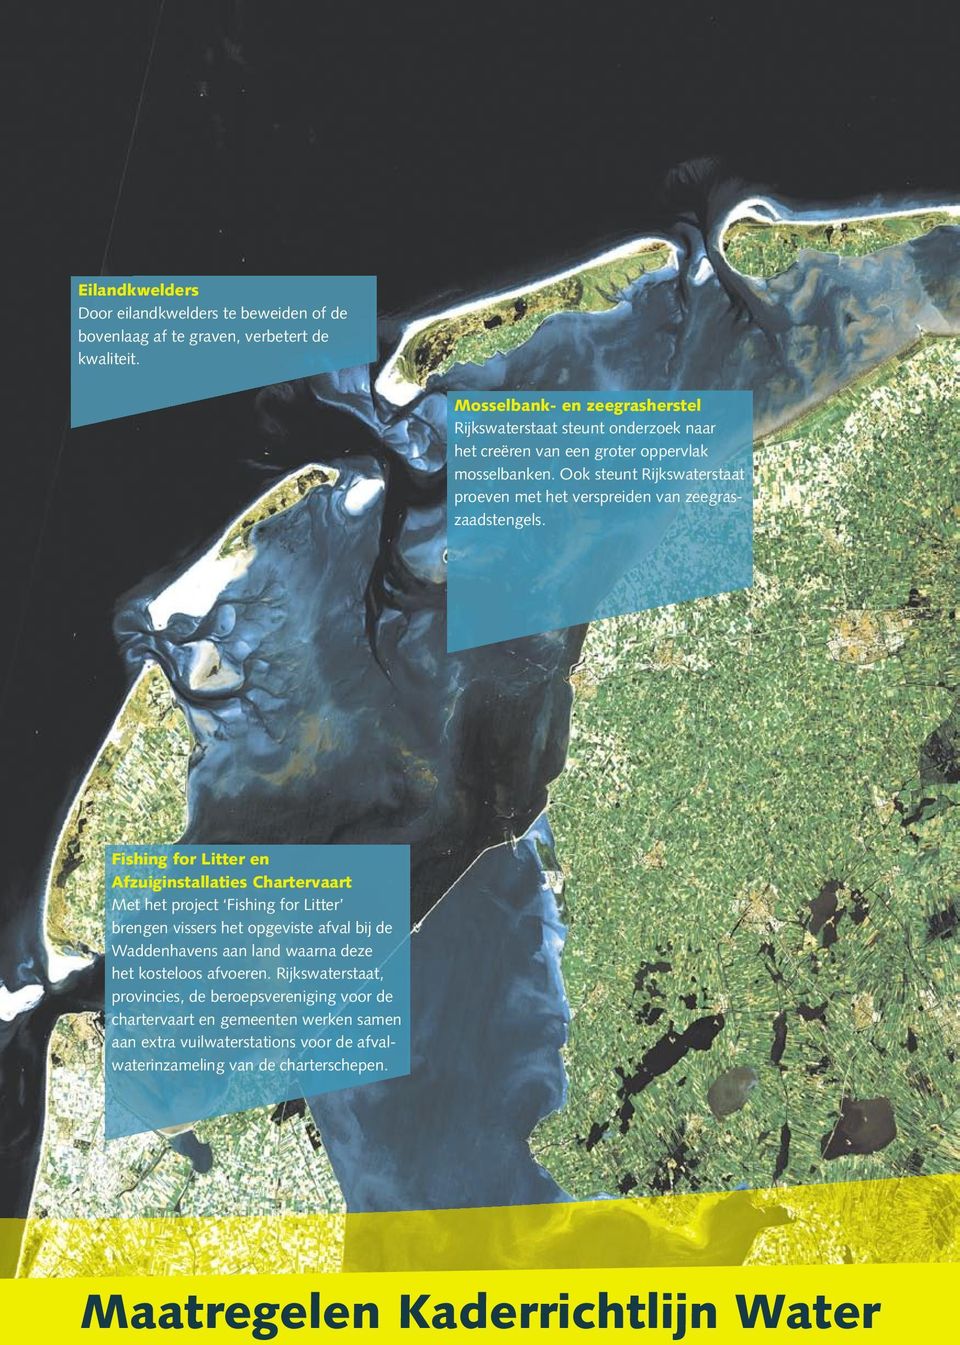 Ook steunt Rijkswaterstaat proeven met het verspreiden van zeegraszaadstengels.